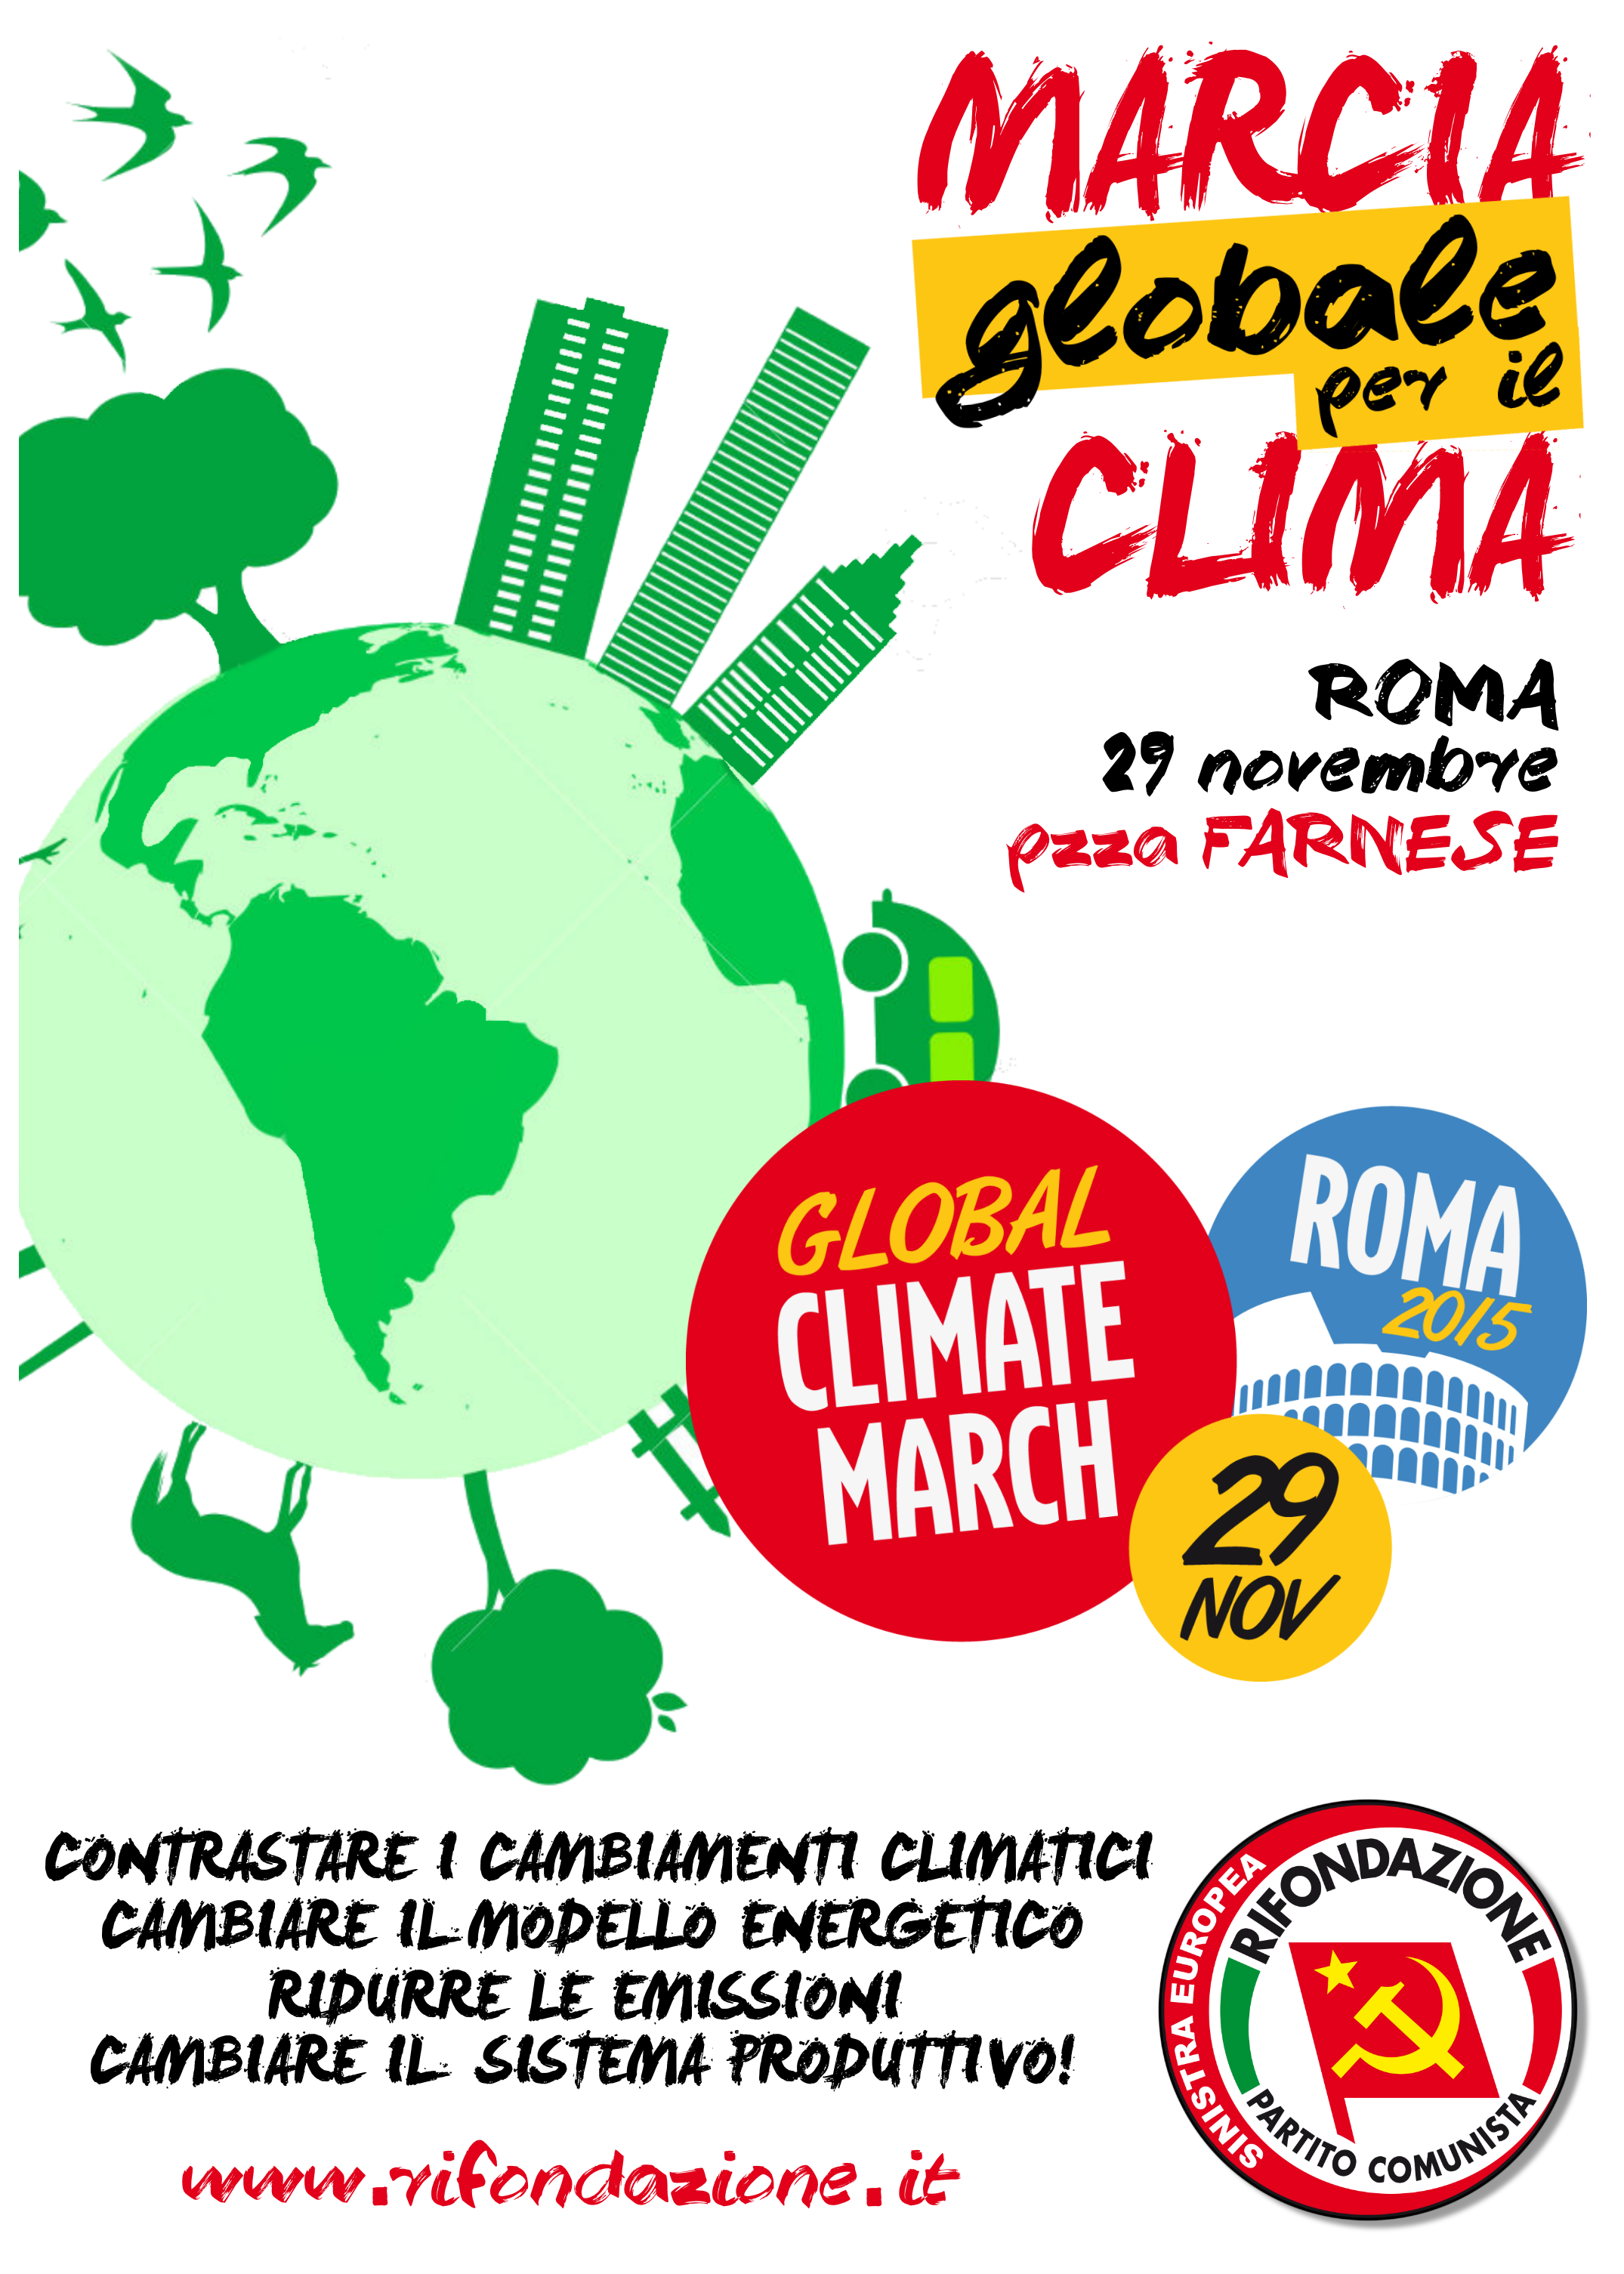 Ambiente, Rifondazione alla Marcia globale per il Clima e verso Cop21